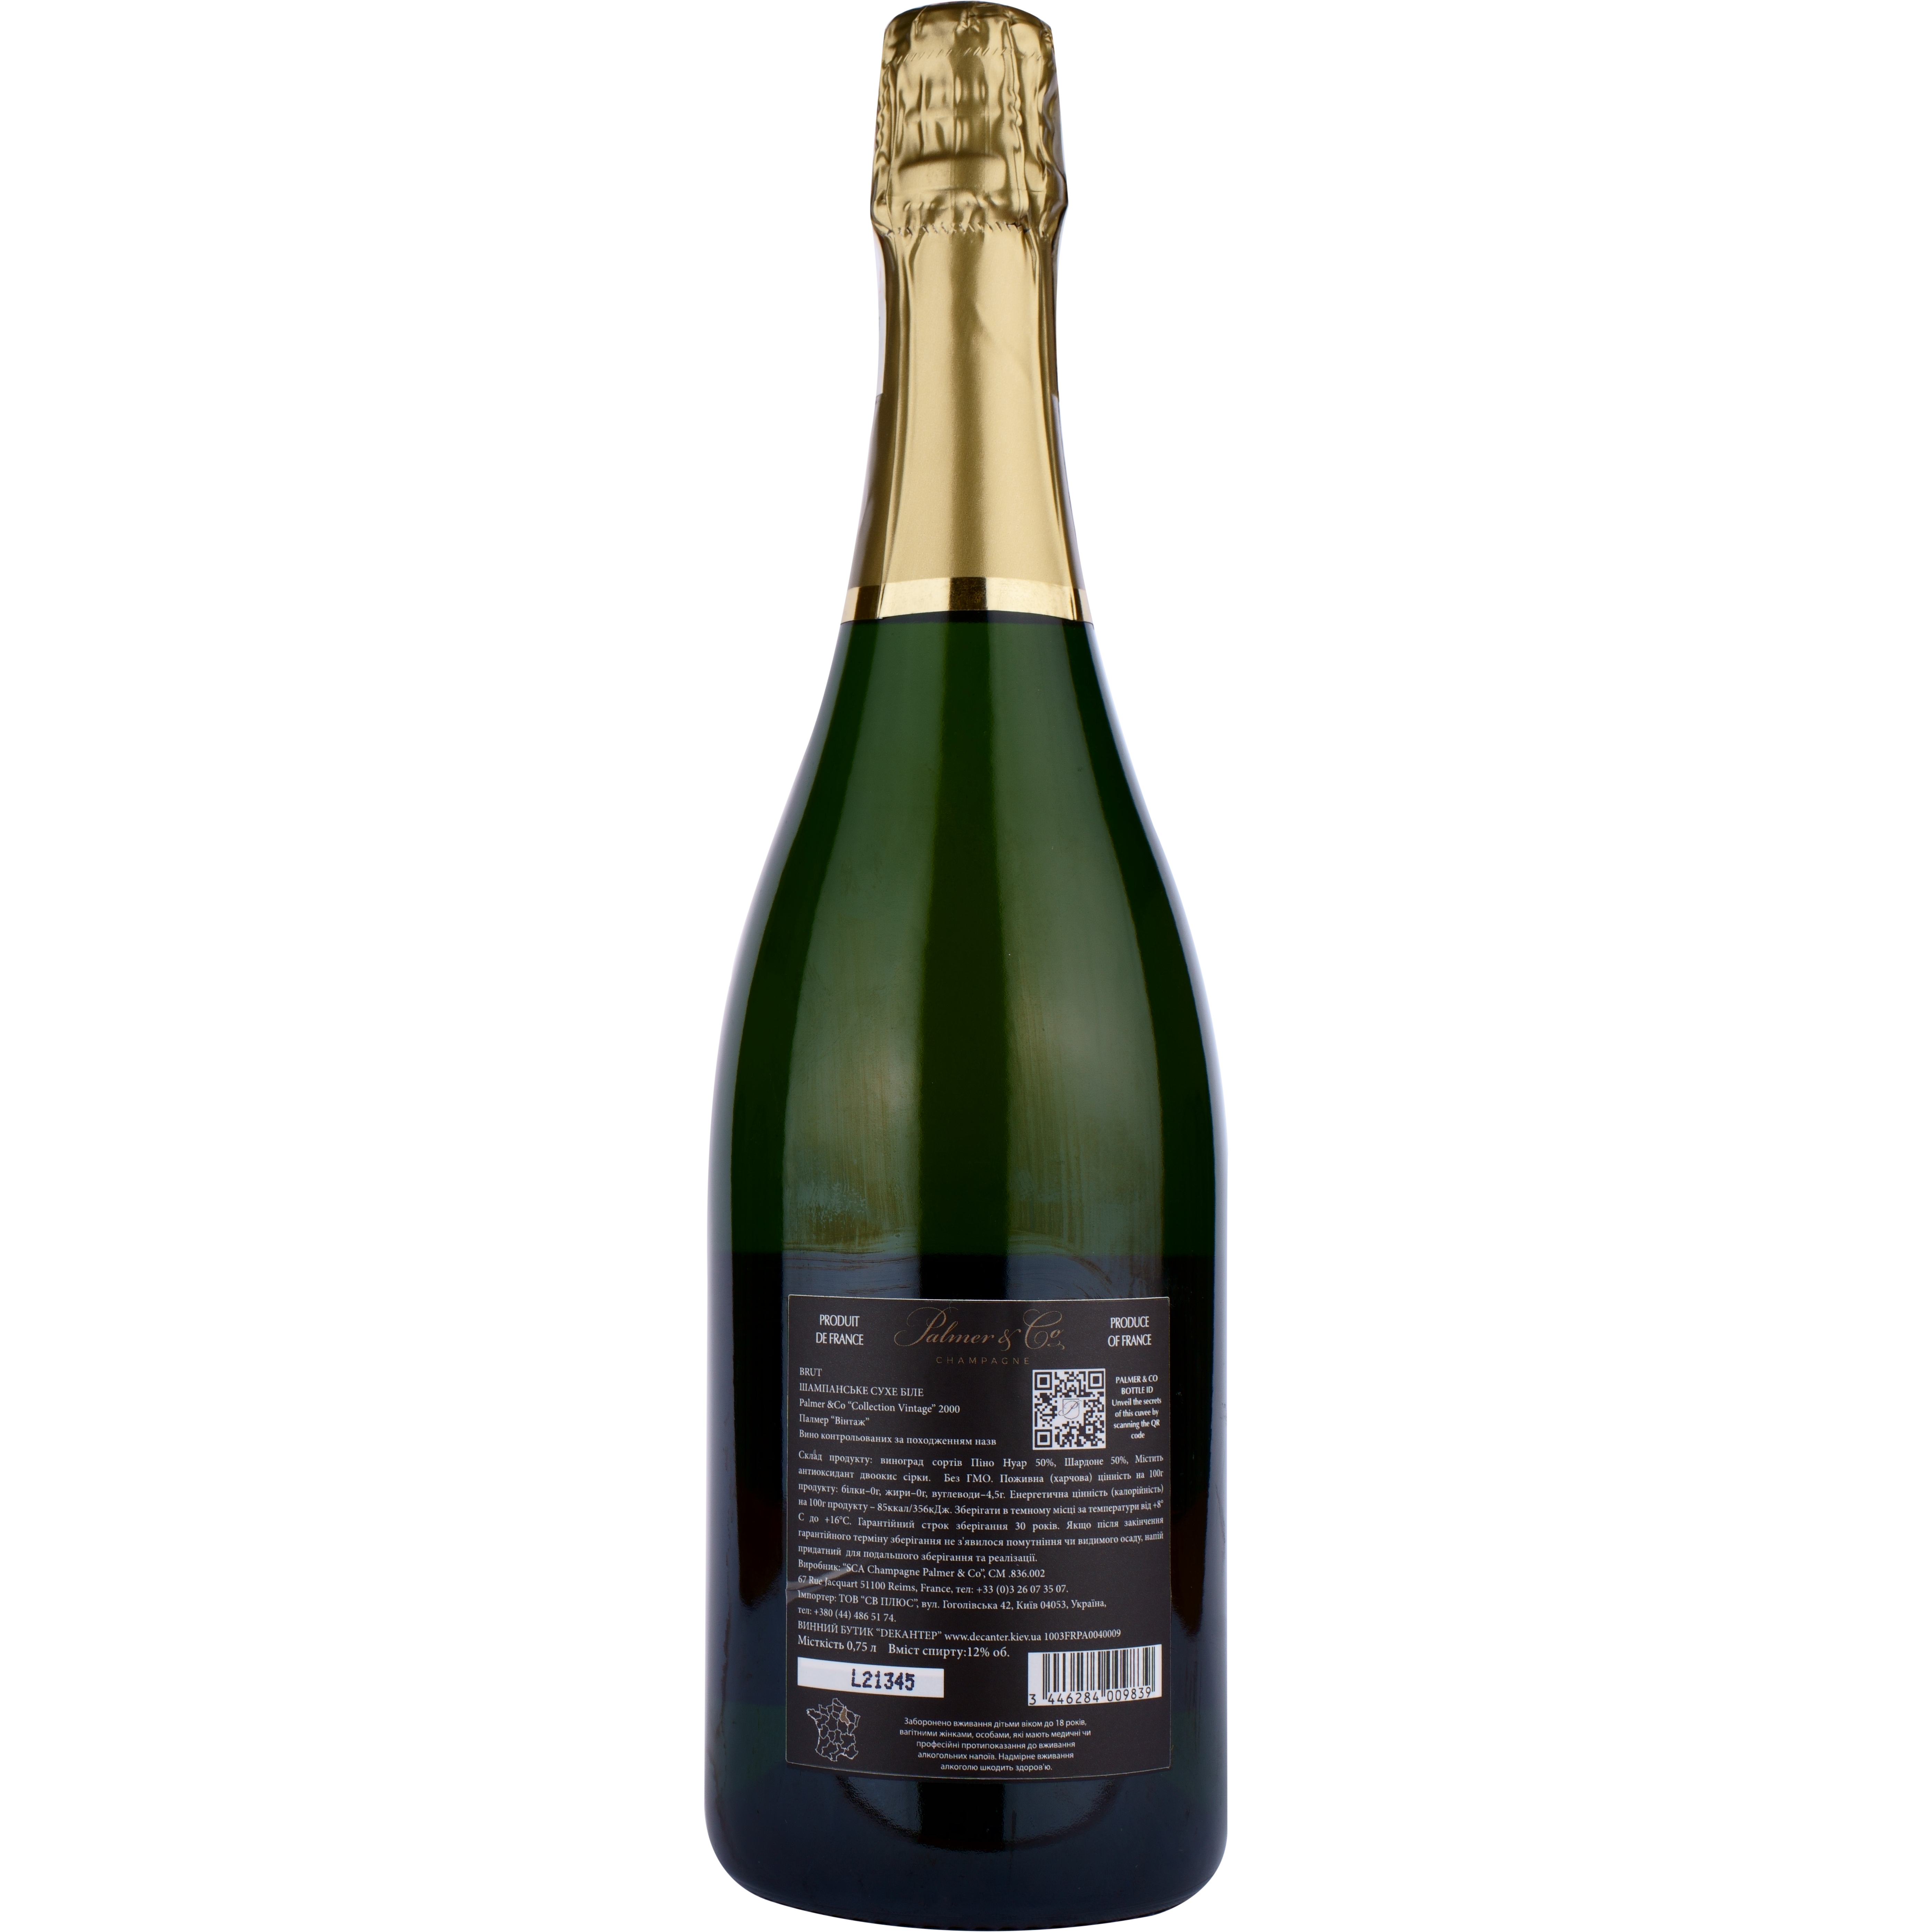 Шампанское Palmer & Co Champagne Brut Collection Vintage 2000 AOC, белое, брют, в деревянной коробке, 0,75 л - фото 2